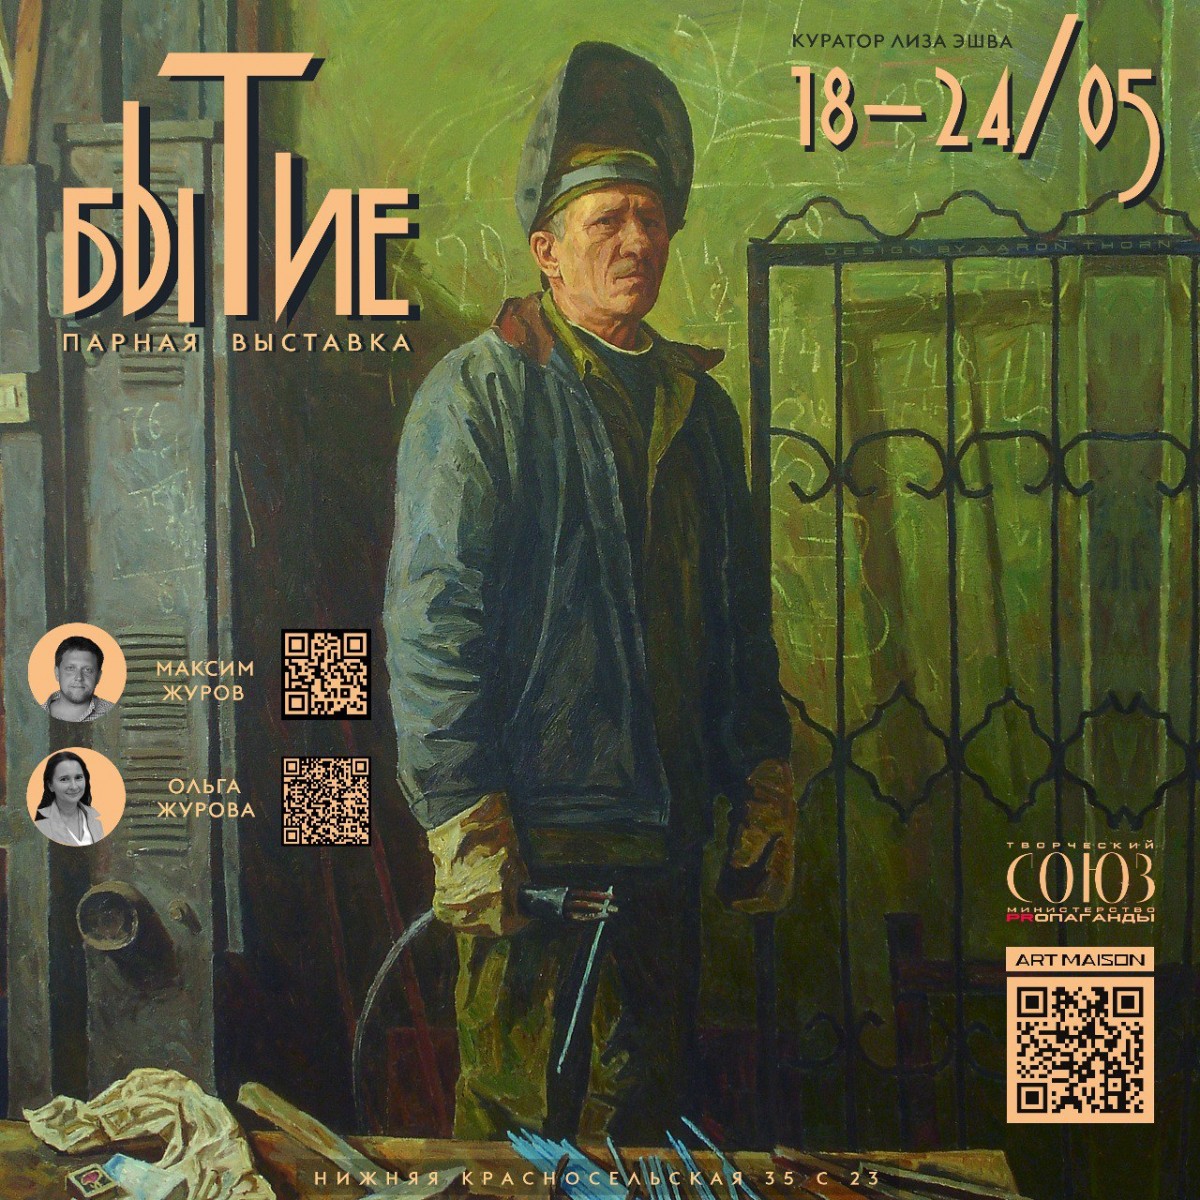 Выставка живописи «БЫТИЕ» Максима и Ольги Журовой, в спецпроекте «Творческий союз» галереи ArtMaison.